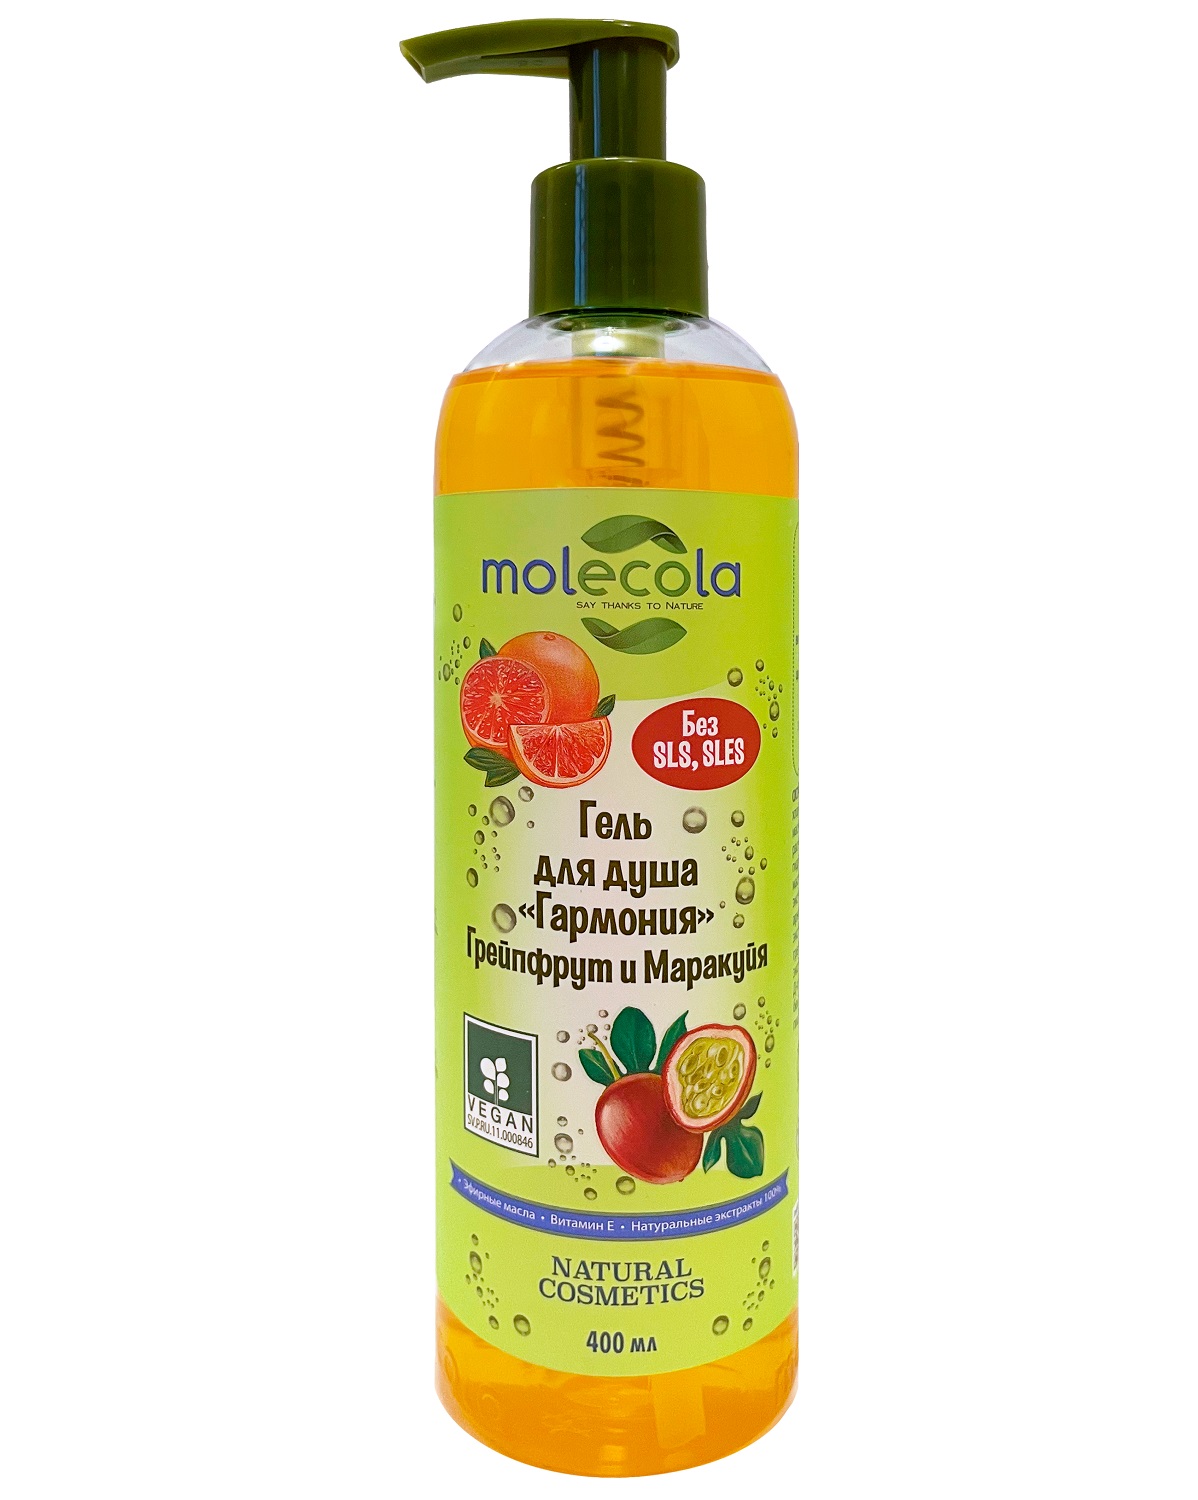 Molecola Гель для душа «Гармония» с грейпфрутом и маракуйей, 400 мл (Molecola, Для душа и ванны)